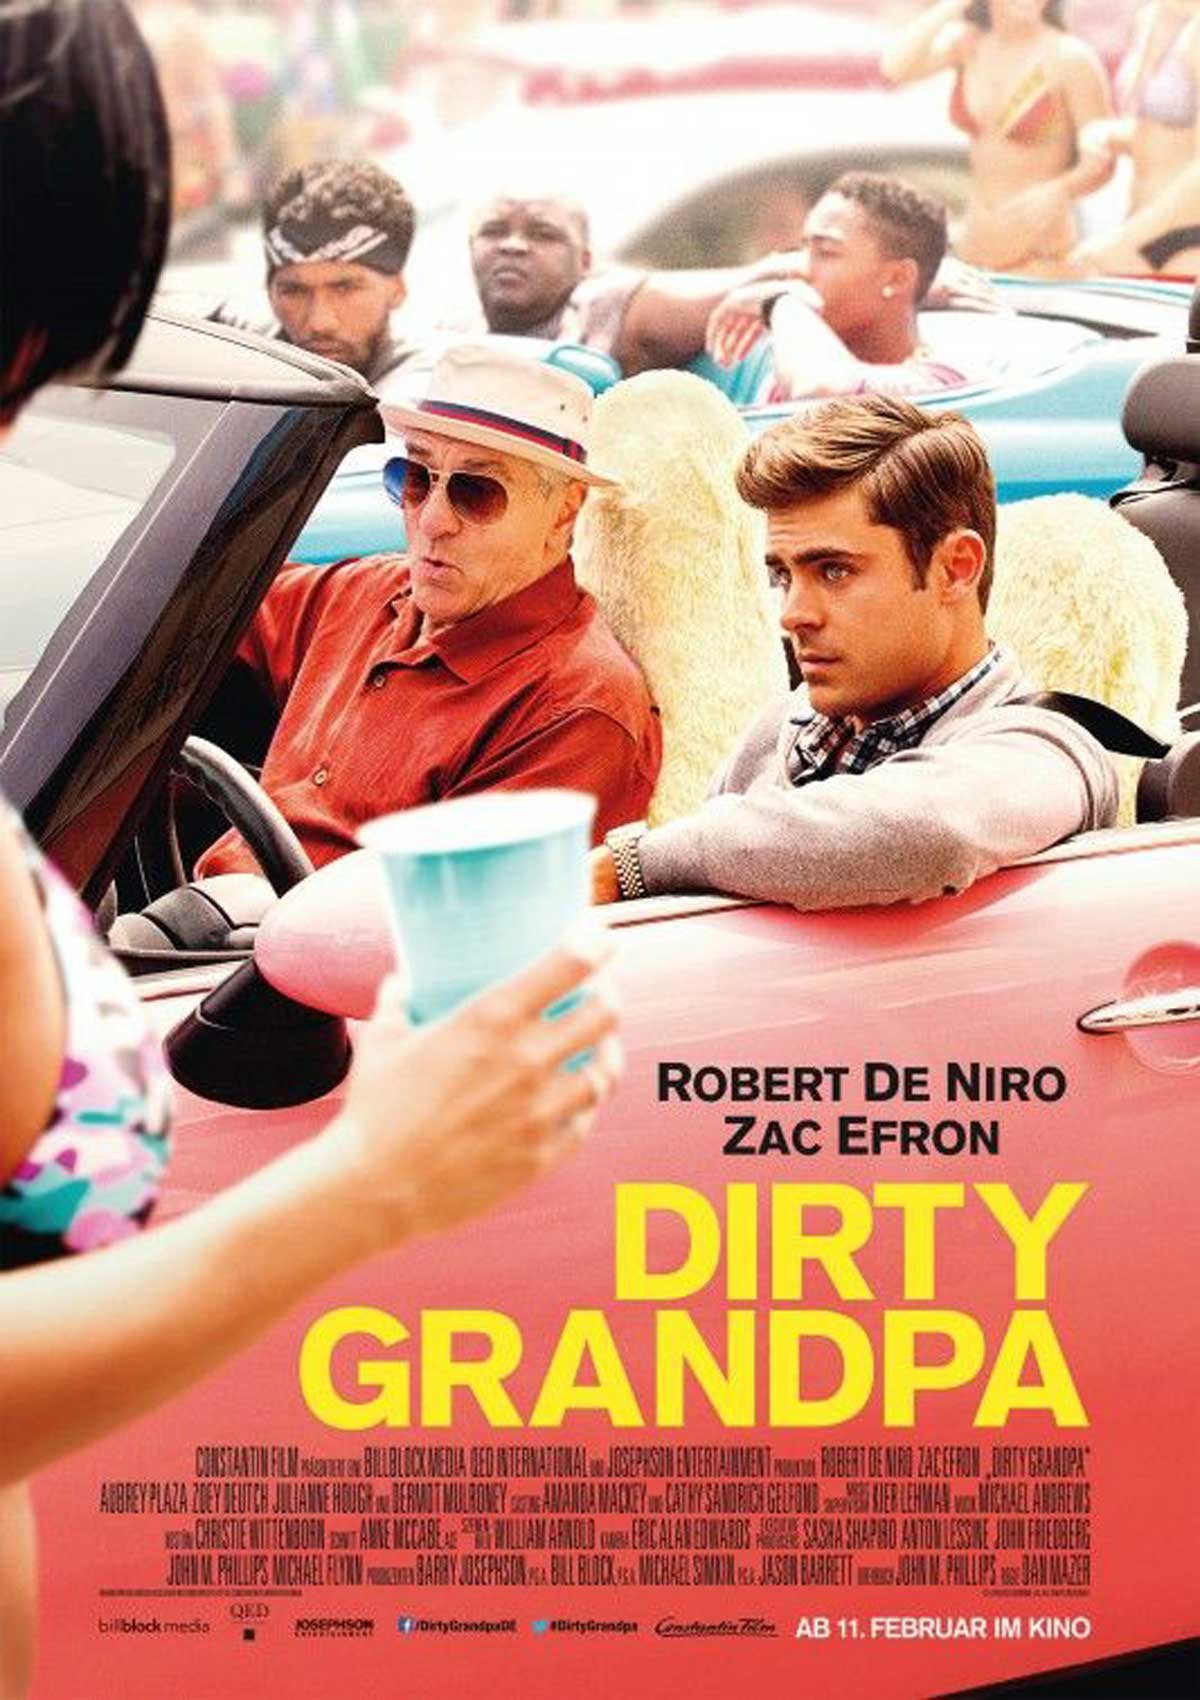 Dirty Grandpa 2 Release Date